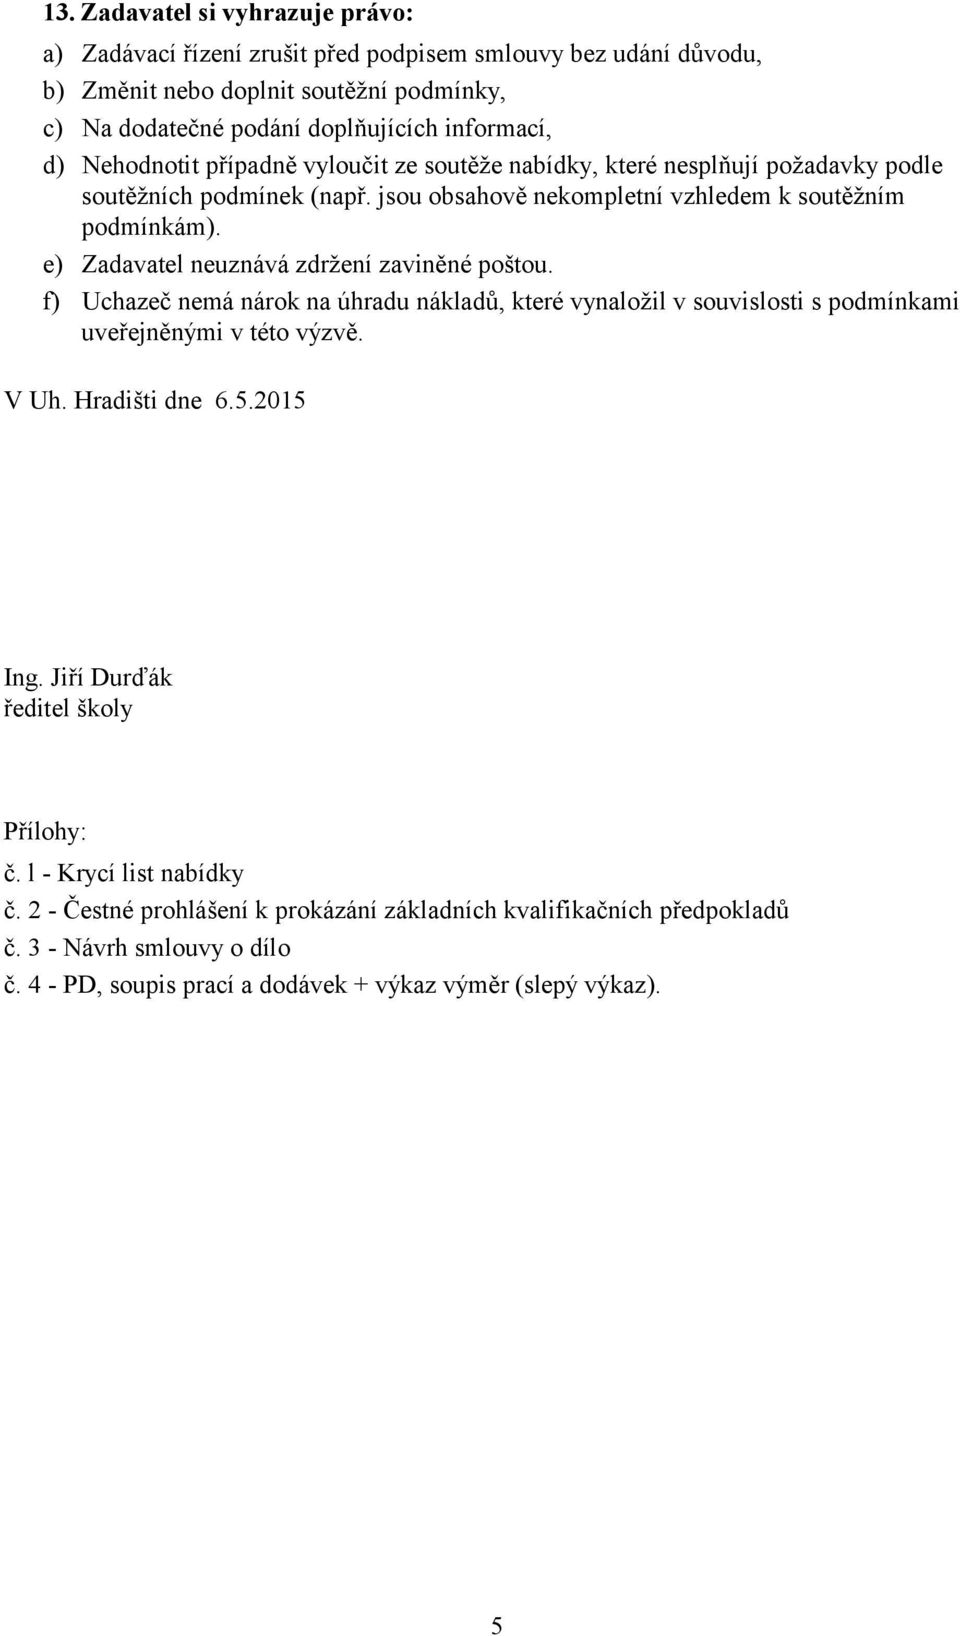 e) Zadavatel neuznává zdržení zaviněné poštou. f) Uchazeč nemá nárok na úhradu nákladů, které vynaložil v souvislosti s podmínkami uveřejněnými v této výzvě. V Uh. Hradišti dne 6.5.2015 Ing.